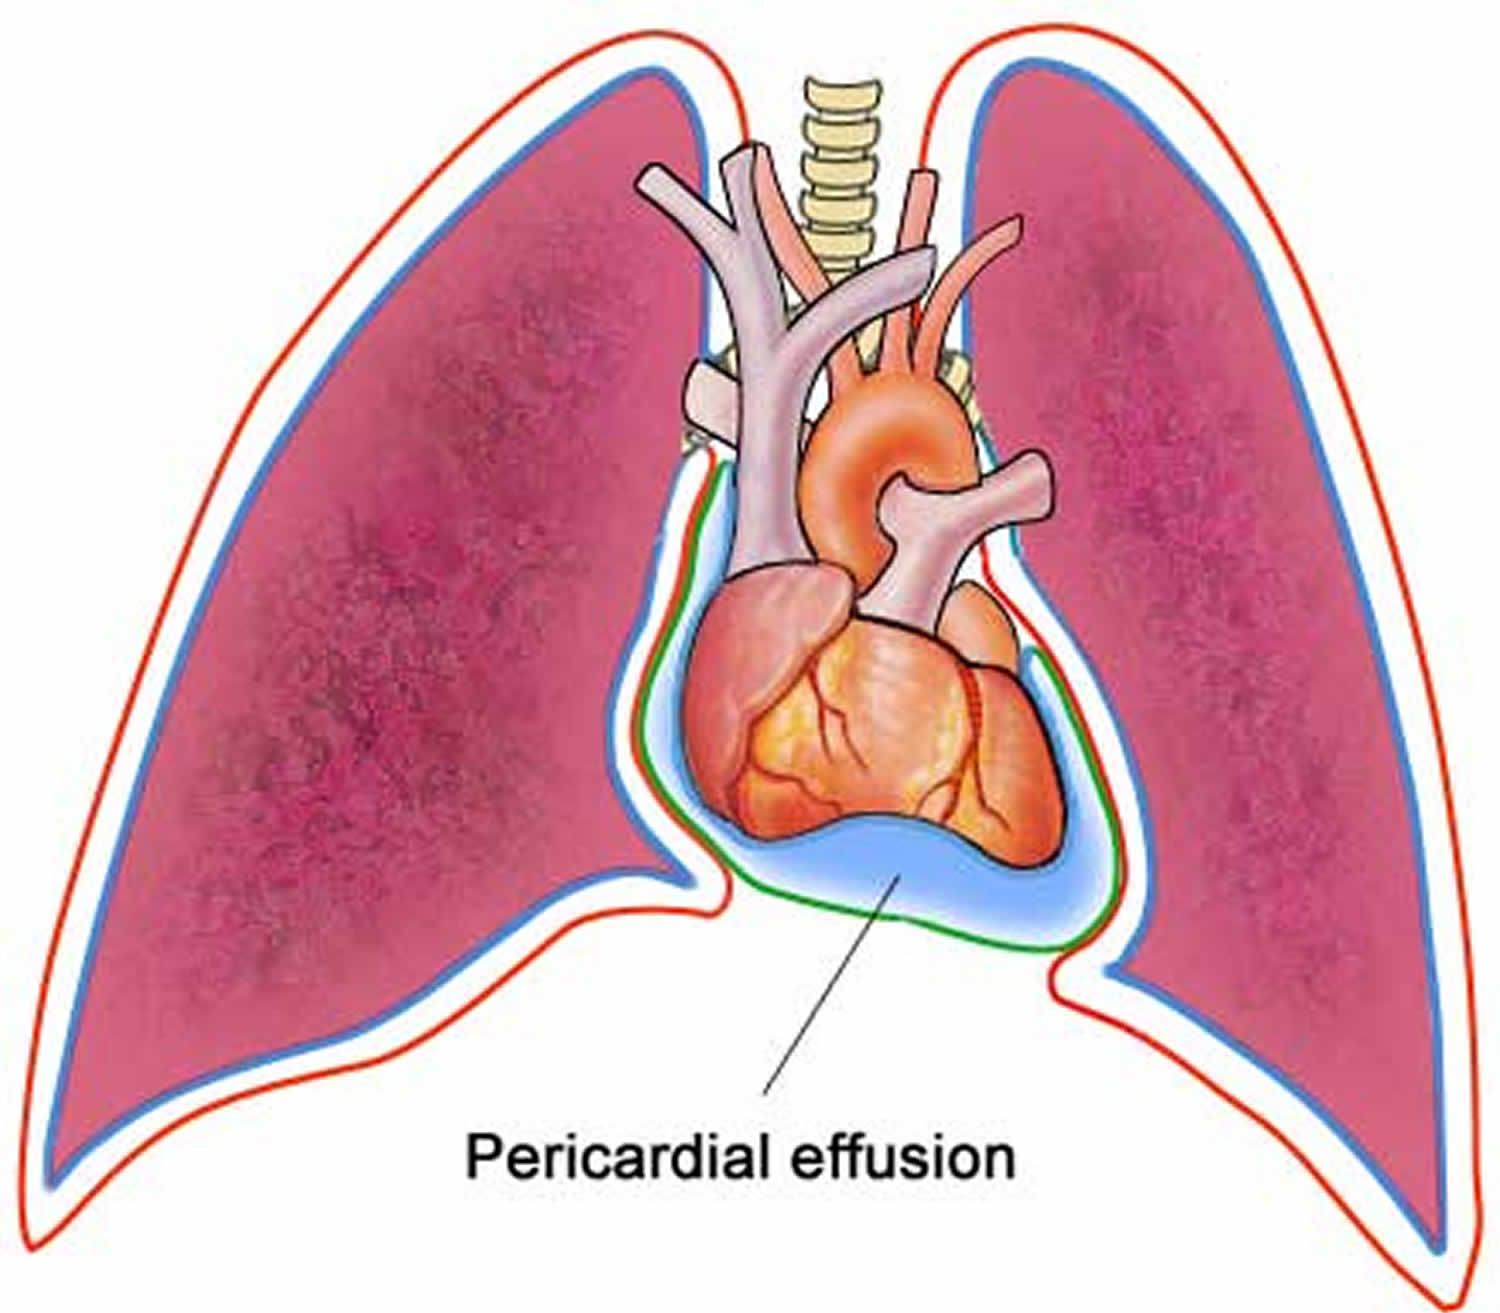 pericardial effusion